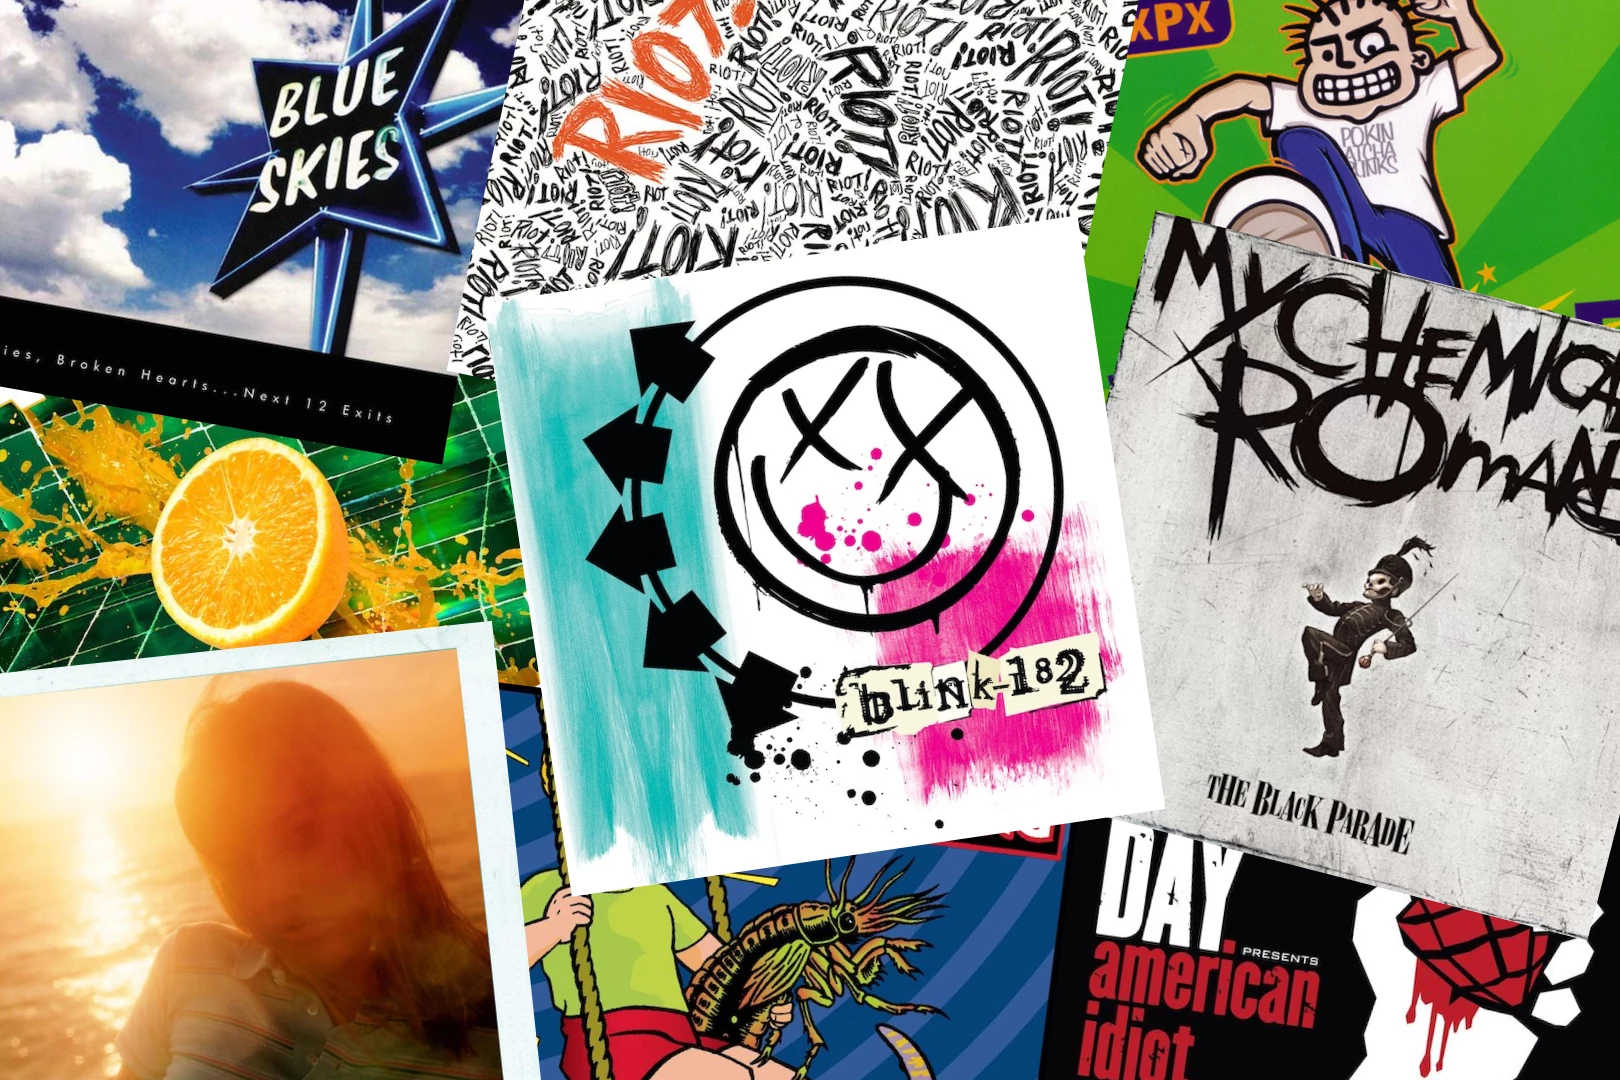 Riot! Album Cover  Paramore, Album covers, Music poster